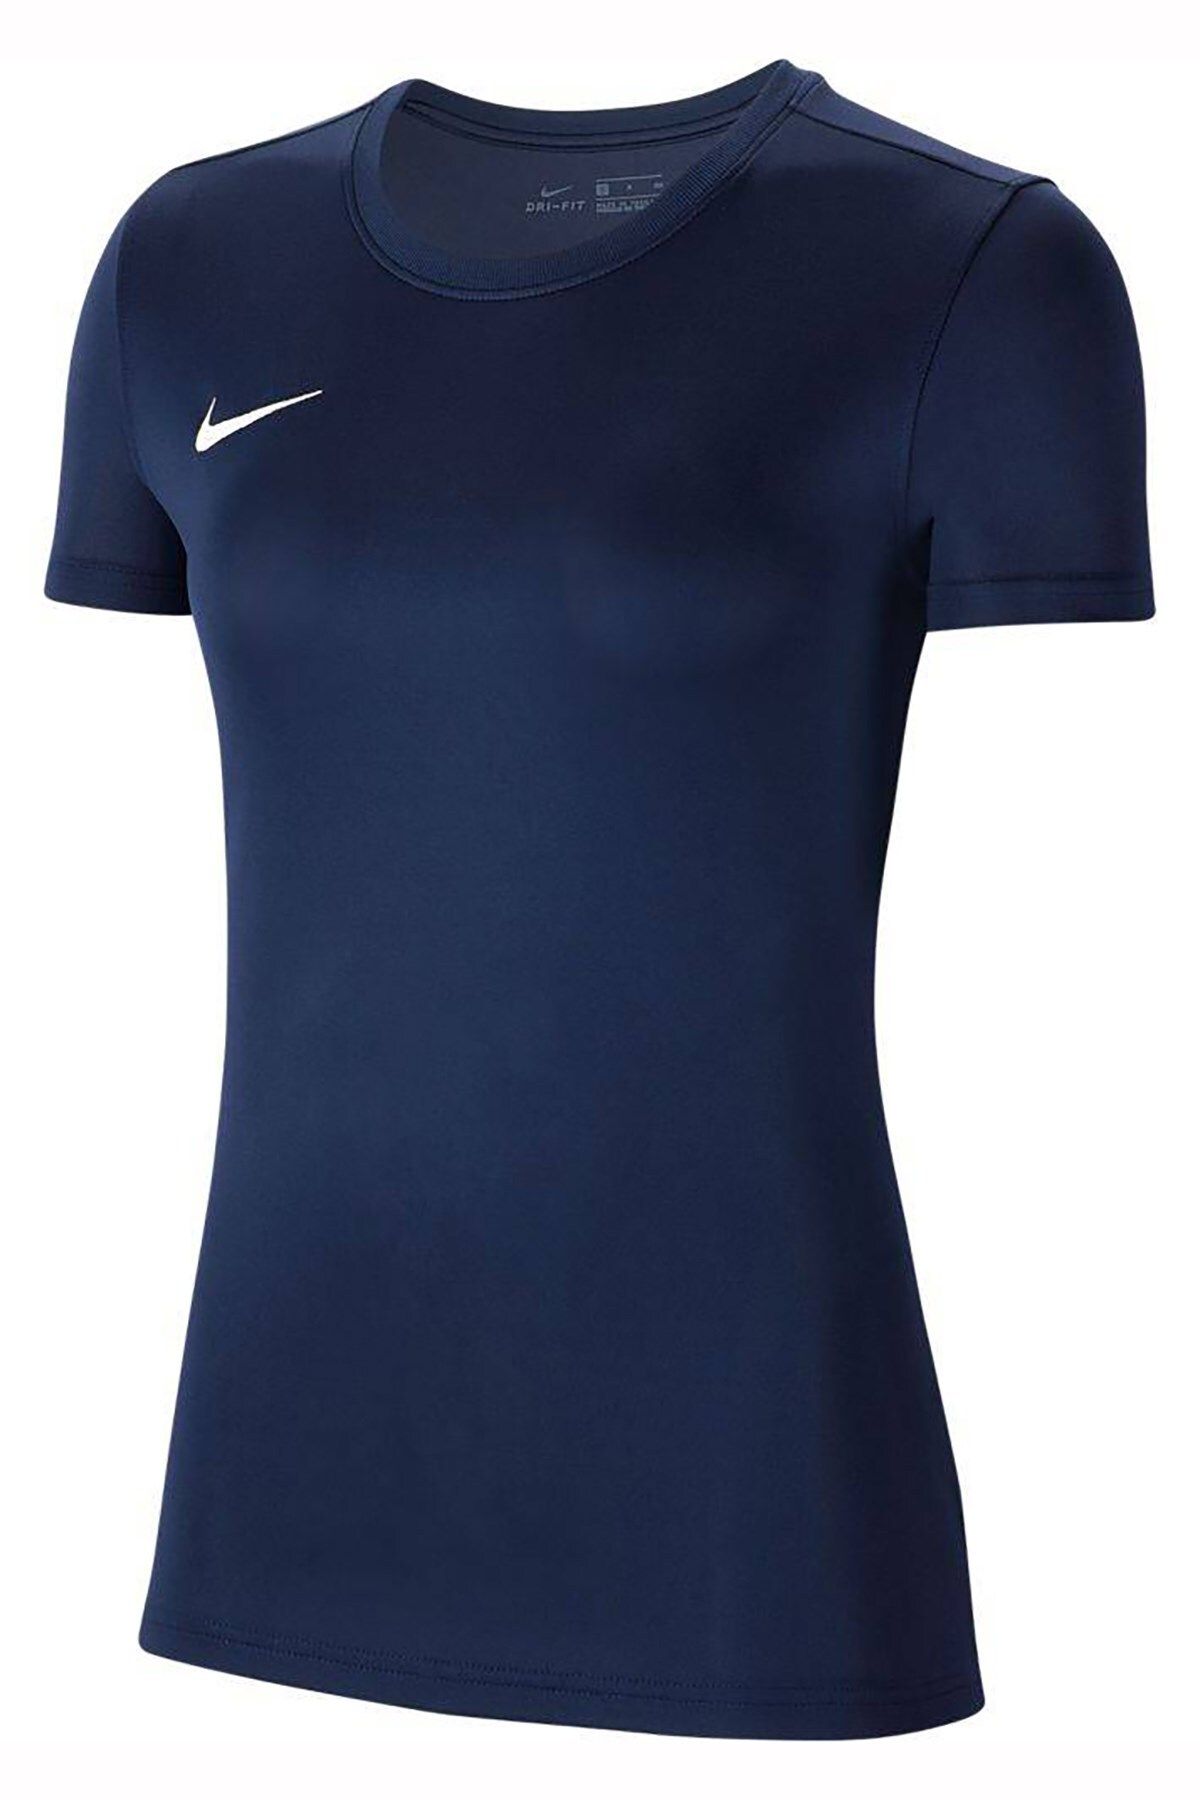 Nike Dry Park Vıı Kadın Tişörtü Bv6728-410